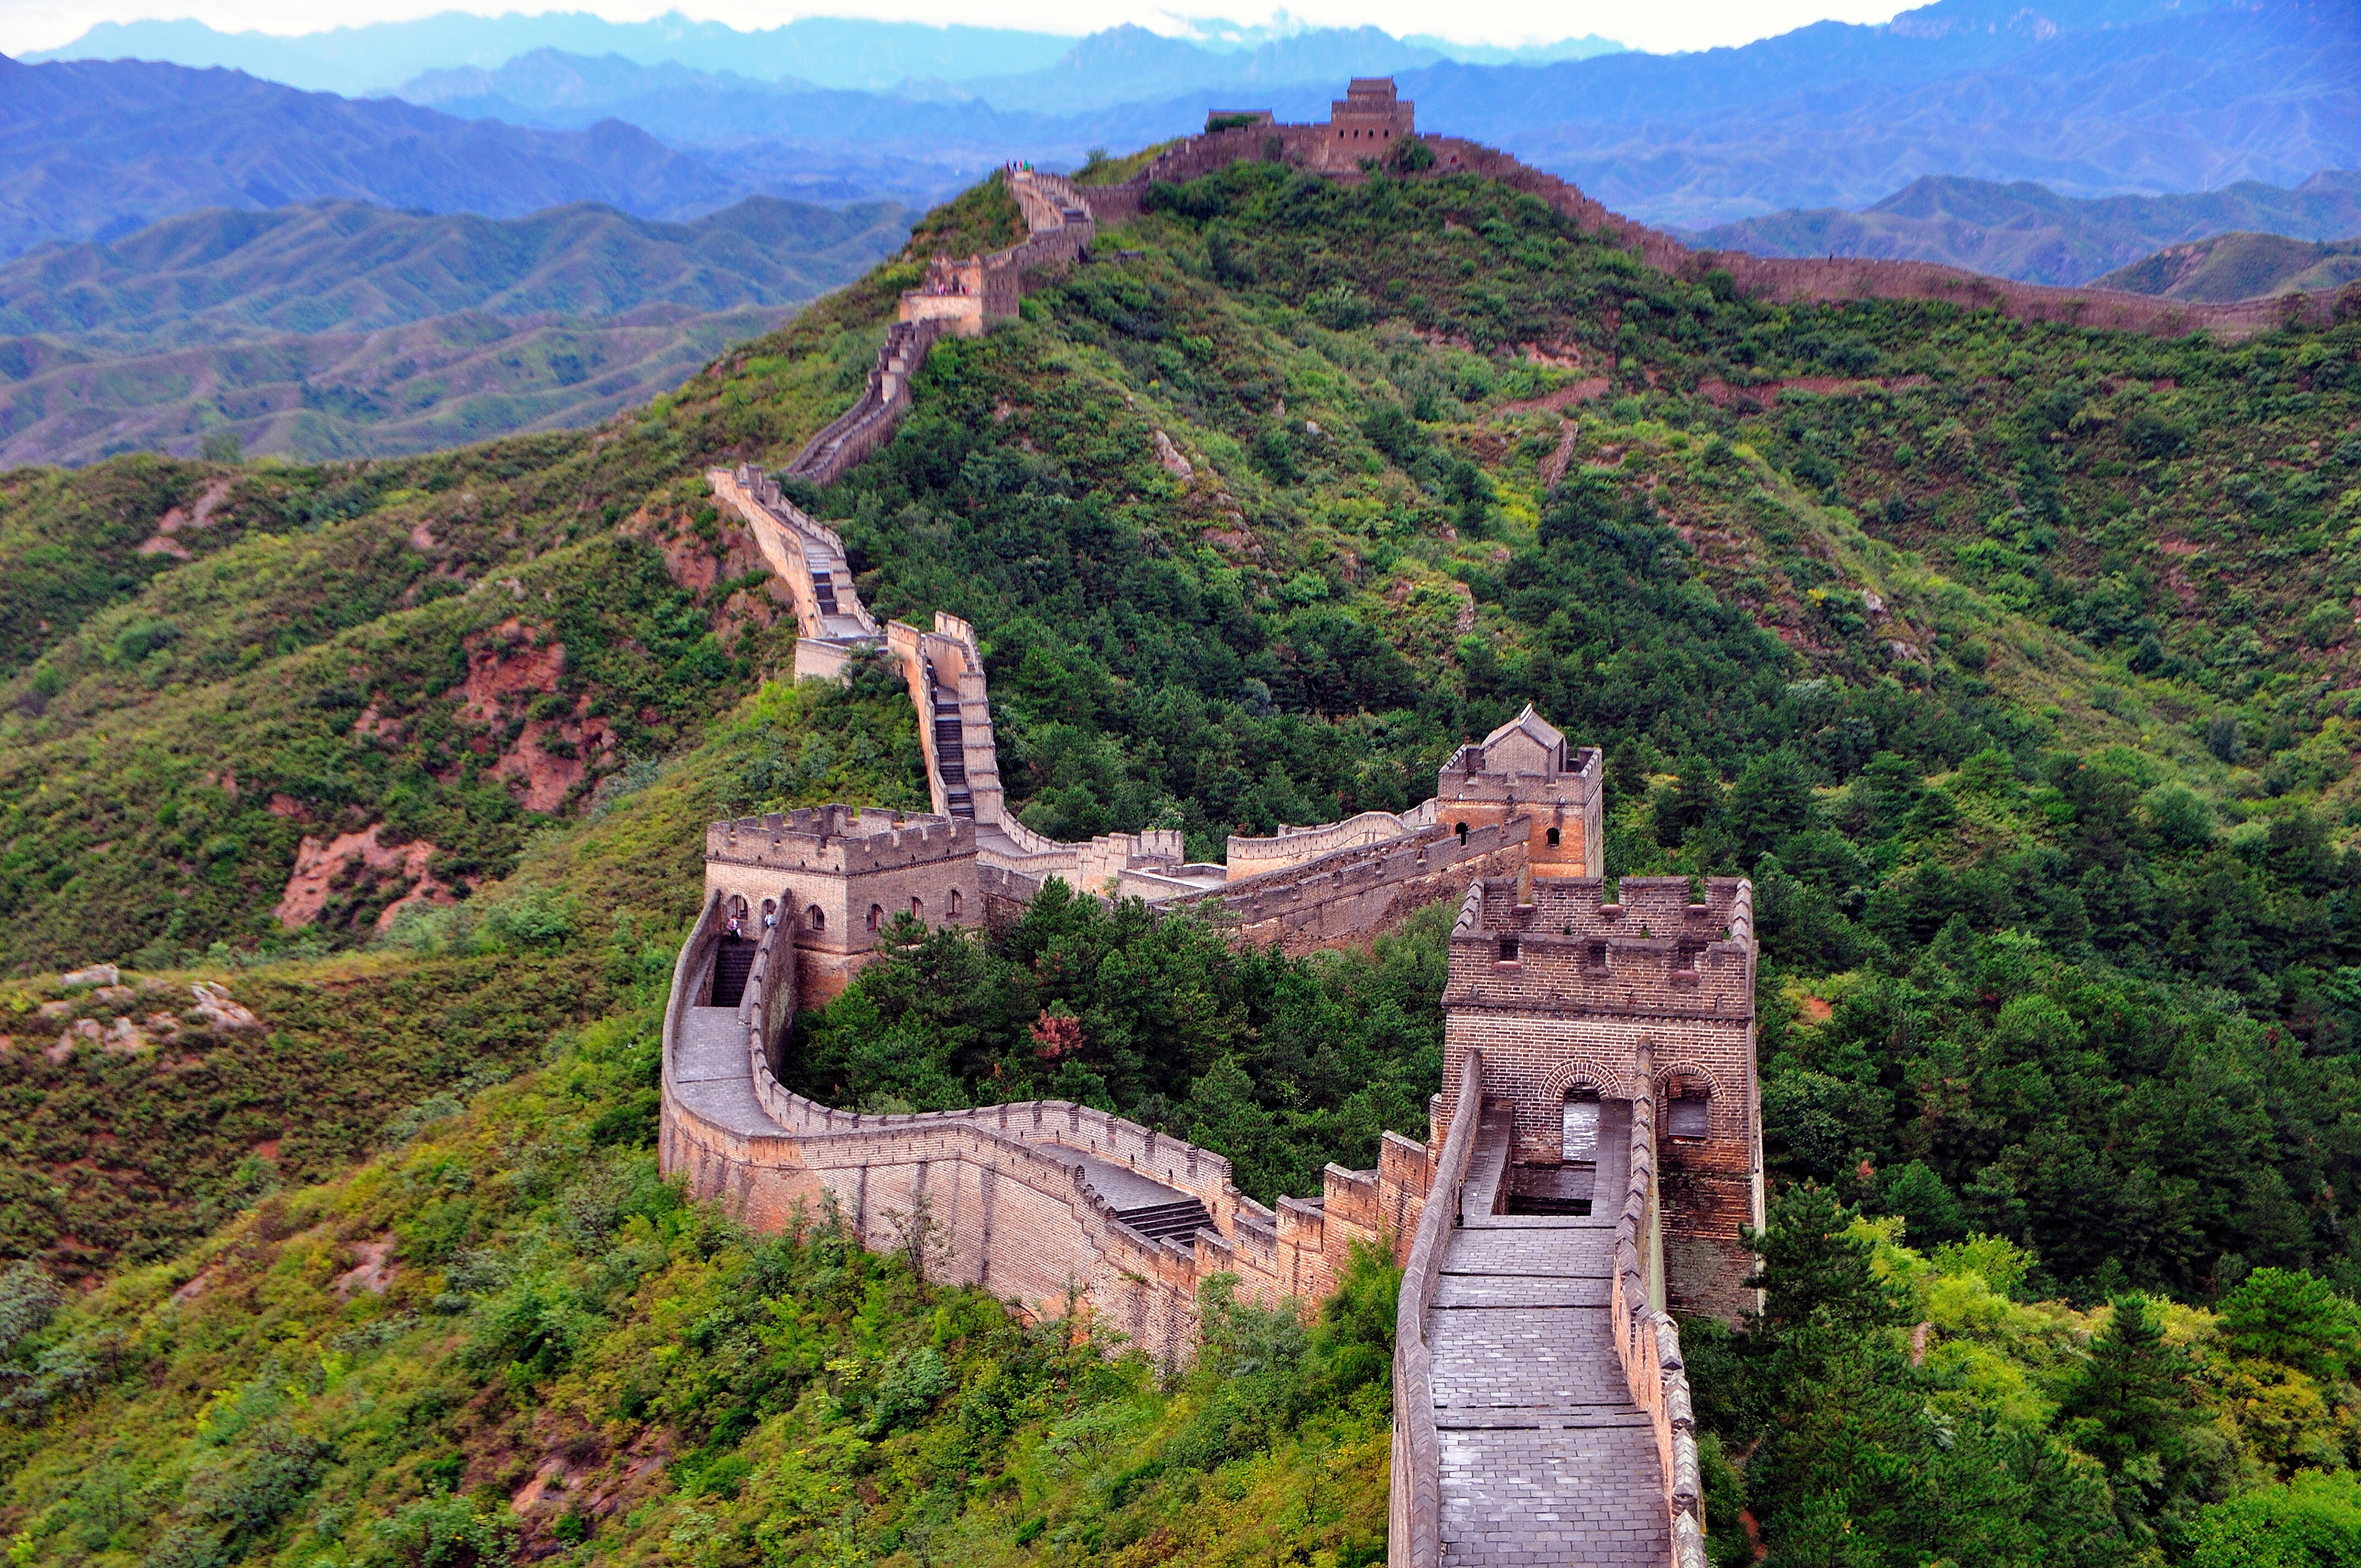 Китайская стена. Китай Пекин Великая китайская стена. Великая китайская стена сторожевые башни. Вдовья башня китайской стены. Великая стена Пекин.